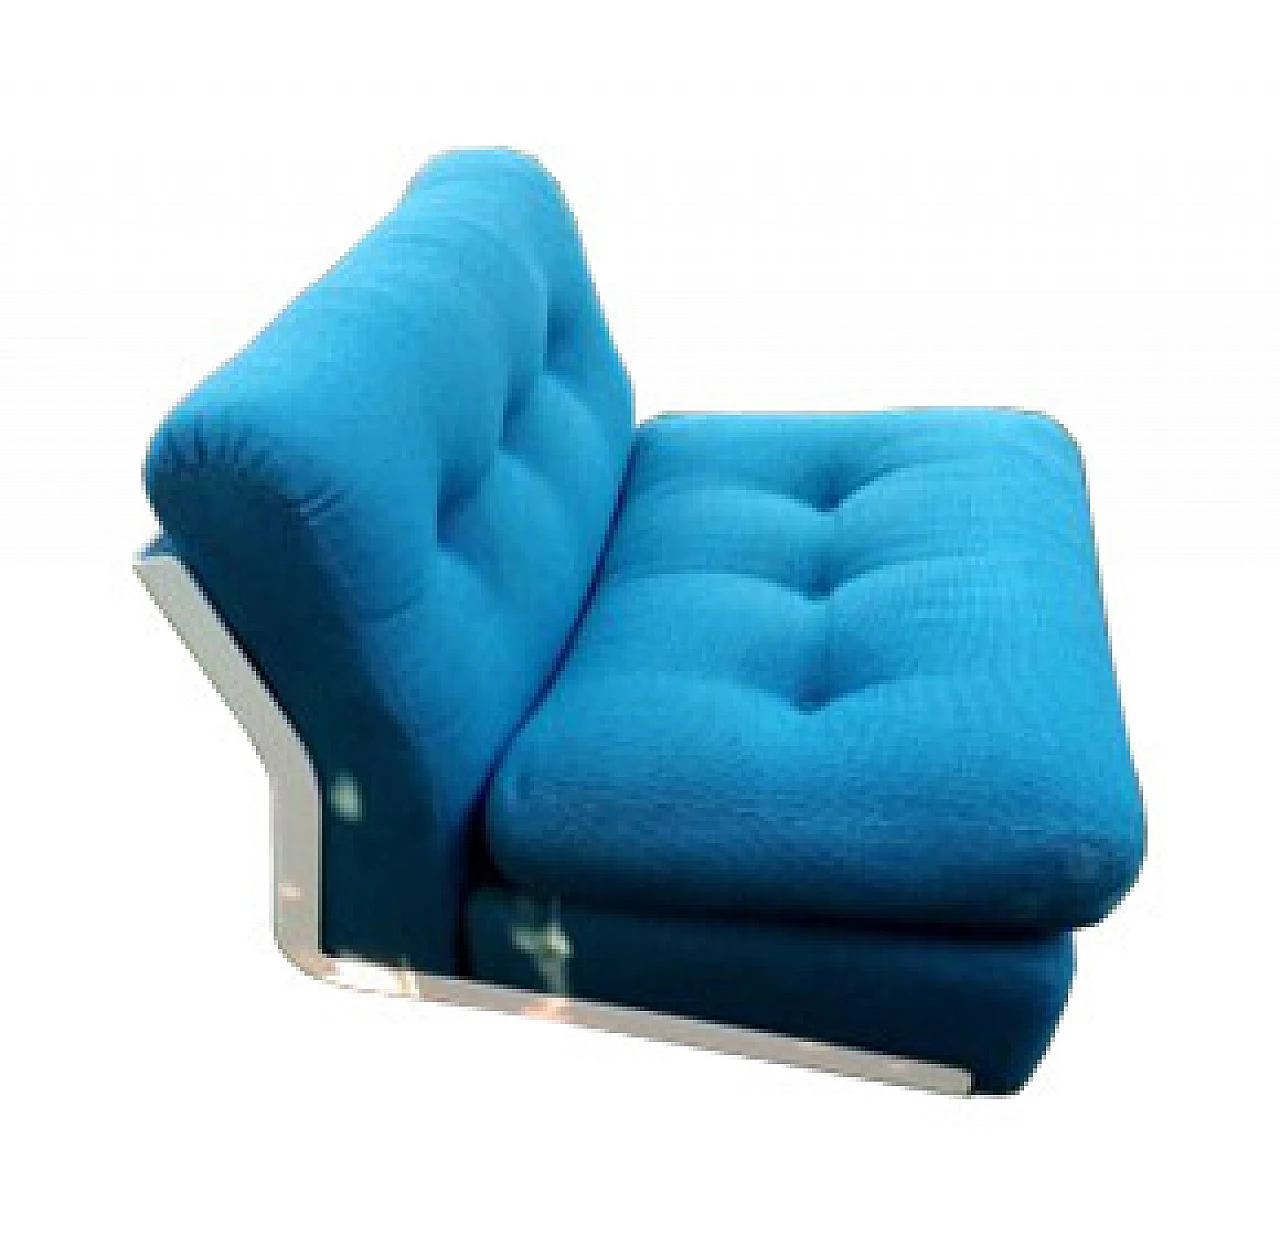 Amanta armchair by Mario Bellini for B&B Italia, 1966 1086049